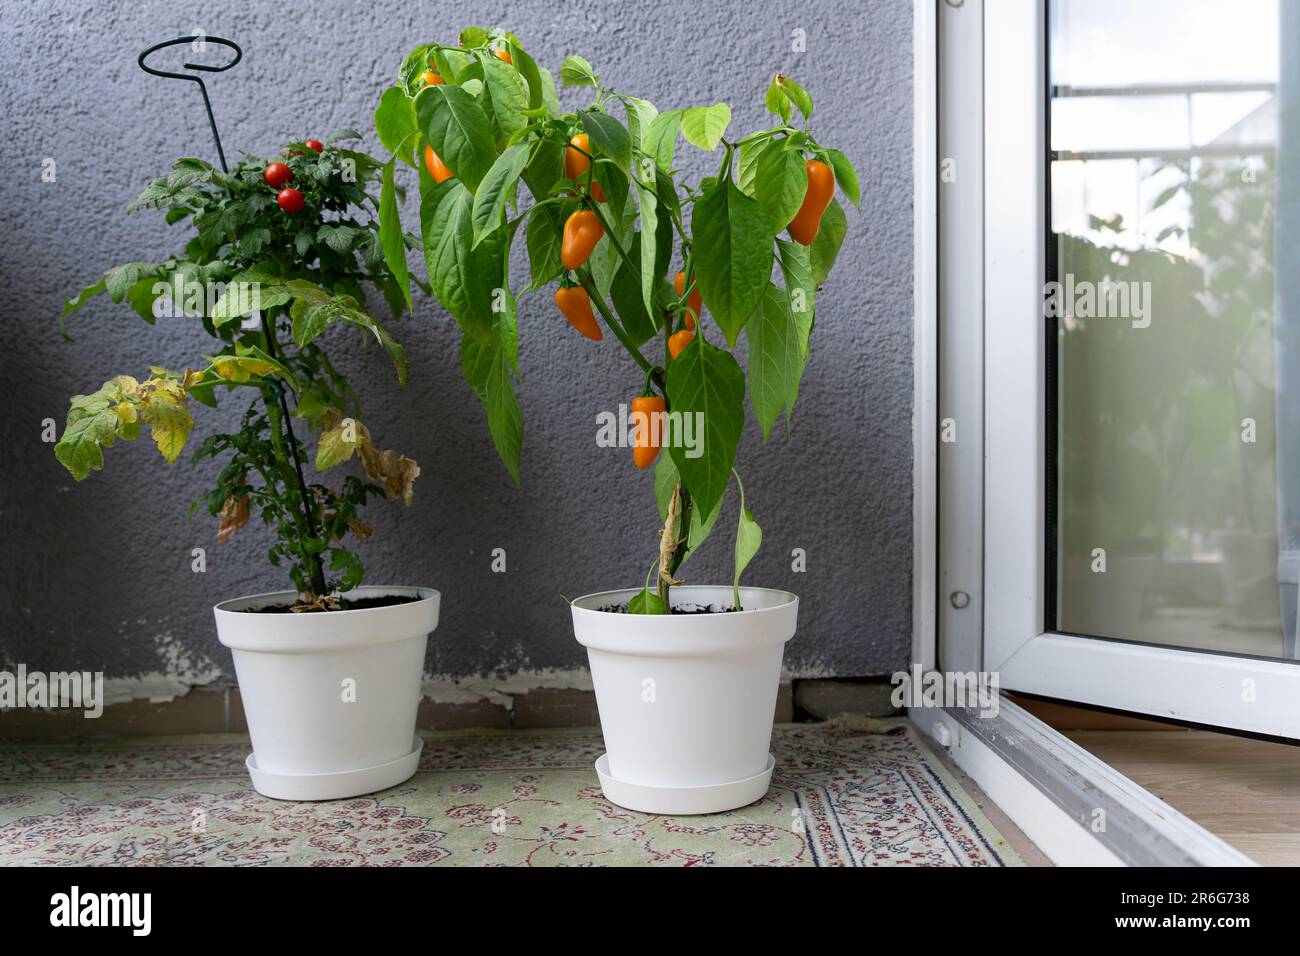 Auf Balkon wachsen Sträucher von Pflanzen. Kirschtomaten, winzige Tim Tomate und heiße Chili NuMex Kürbis Gewürzchips in weißen Töpfen mit reifen Früchten Stockfotografie - Alamy